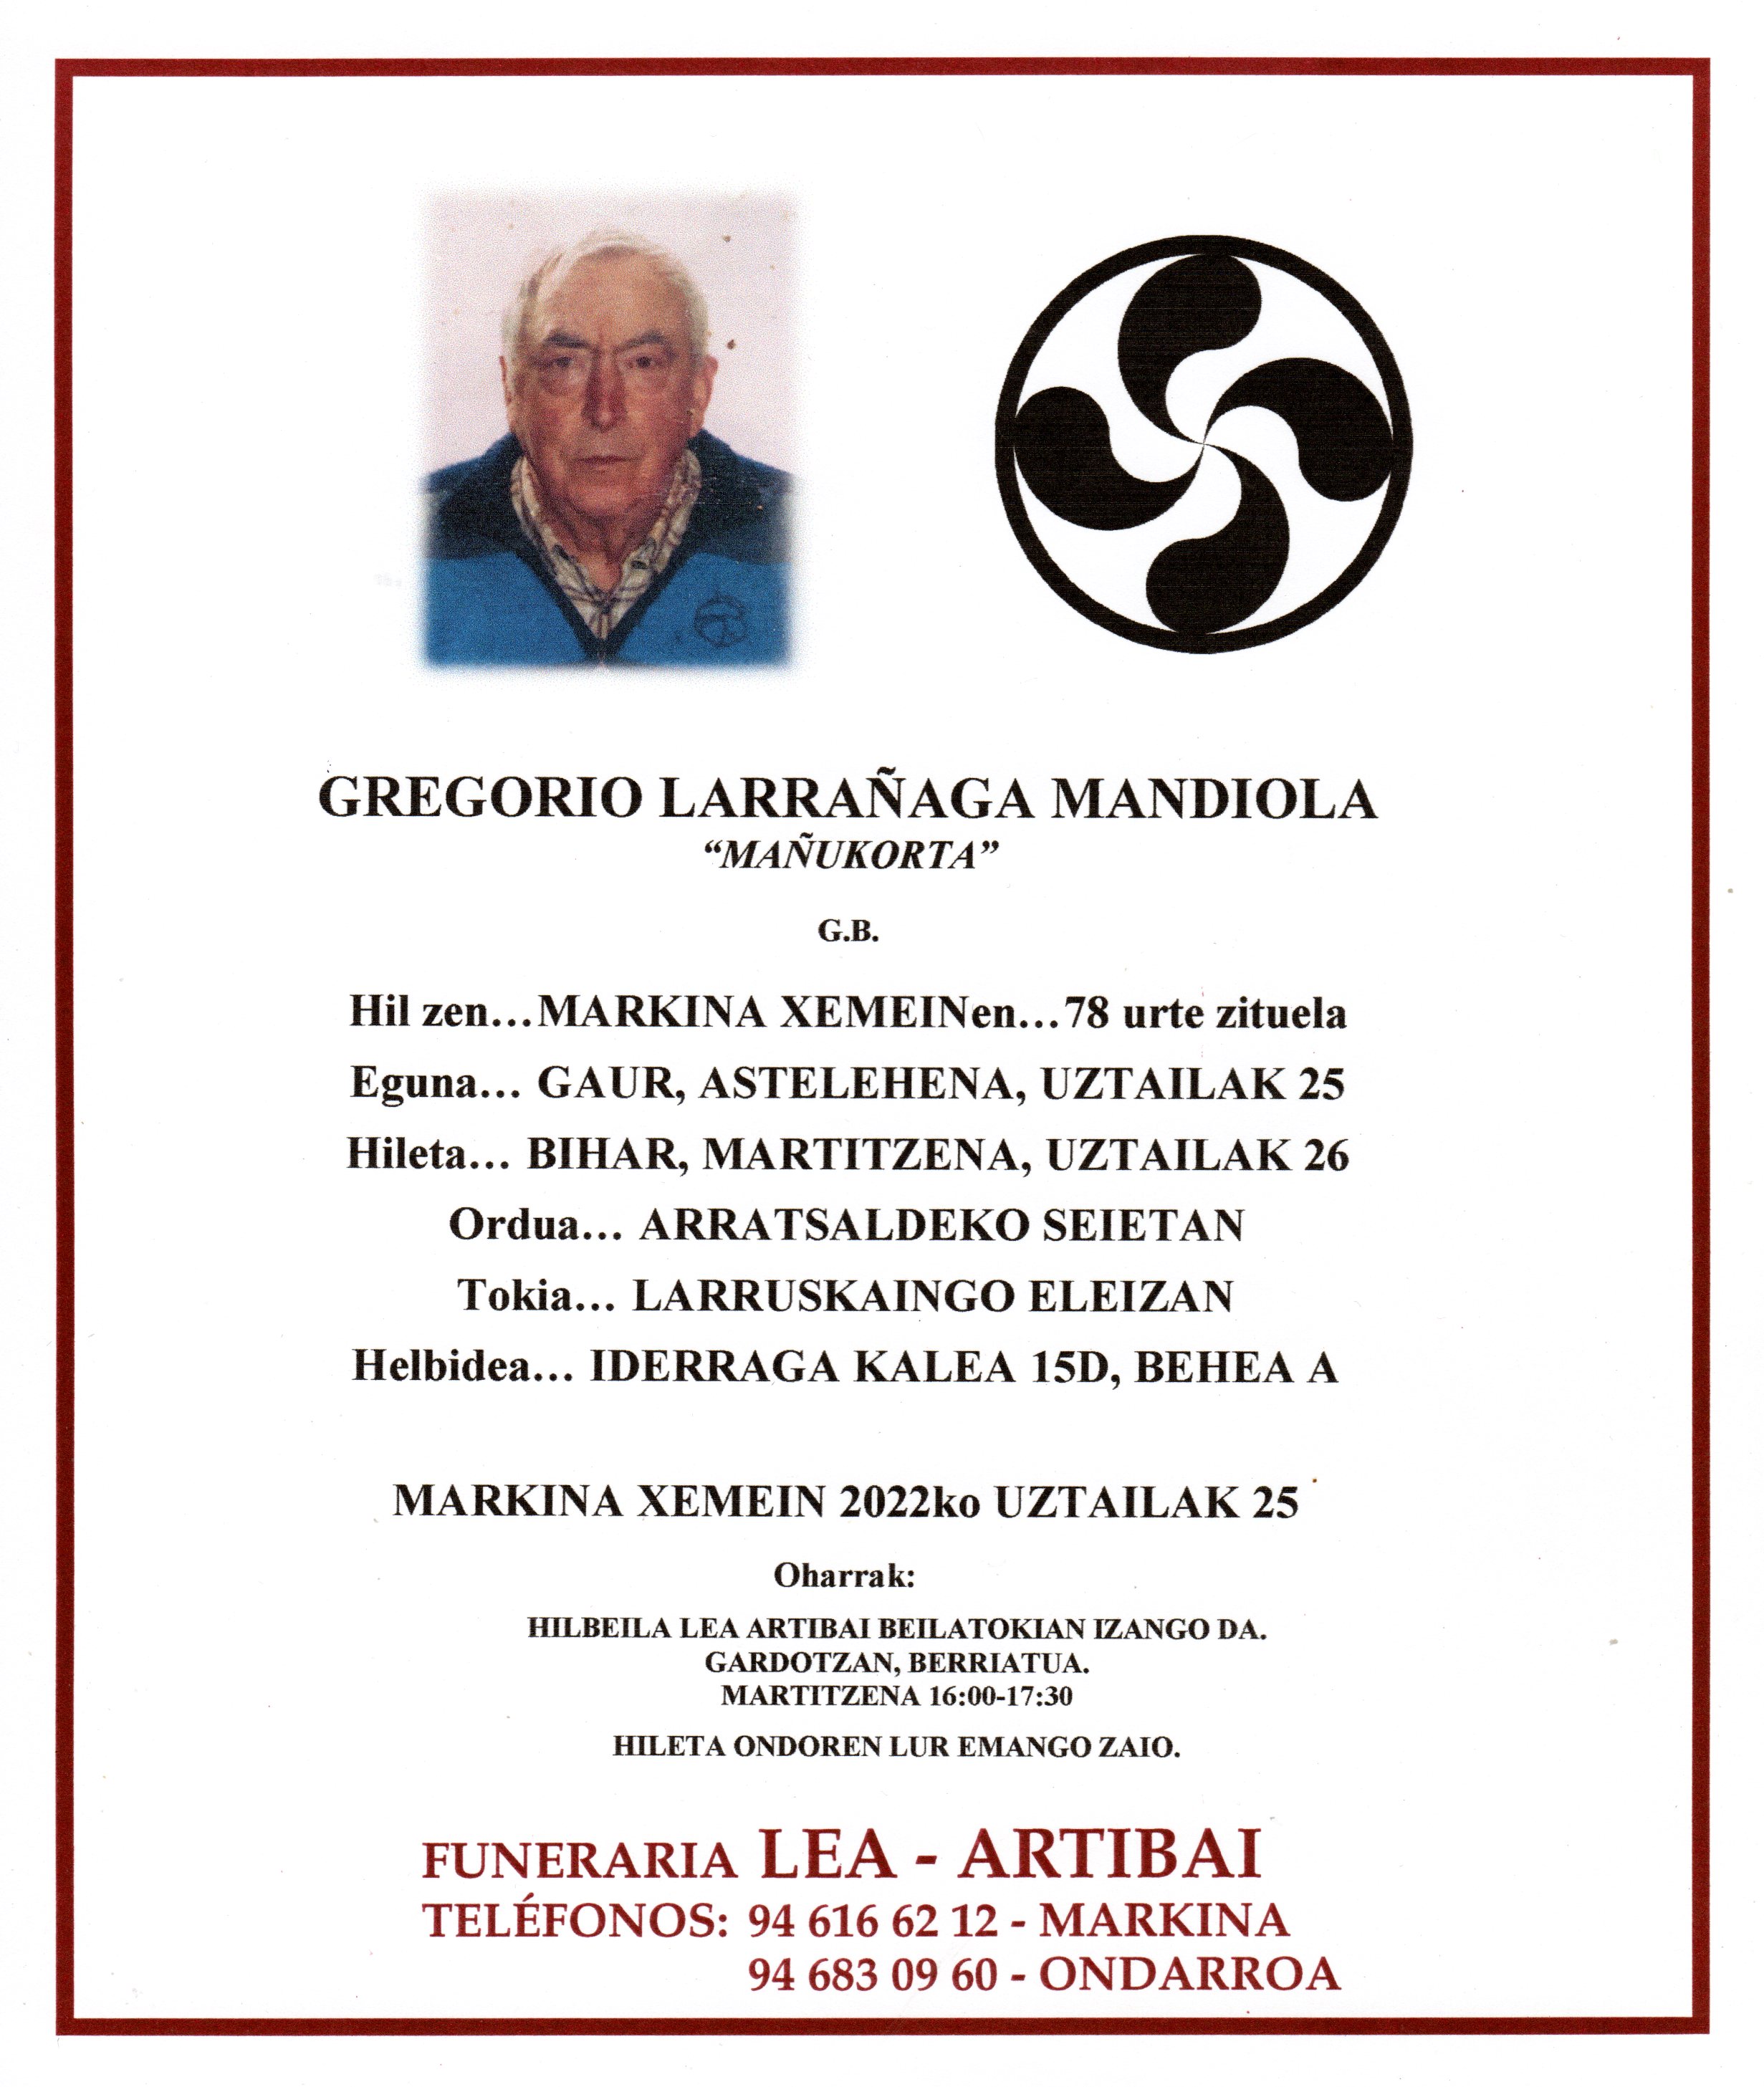 Gregorio Larrañaga Mandiola